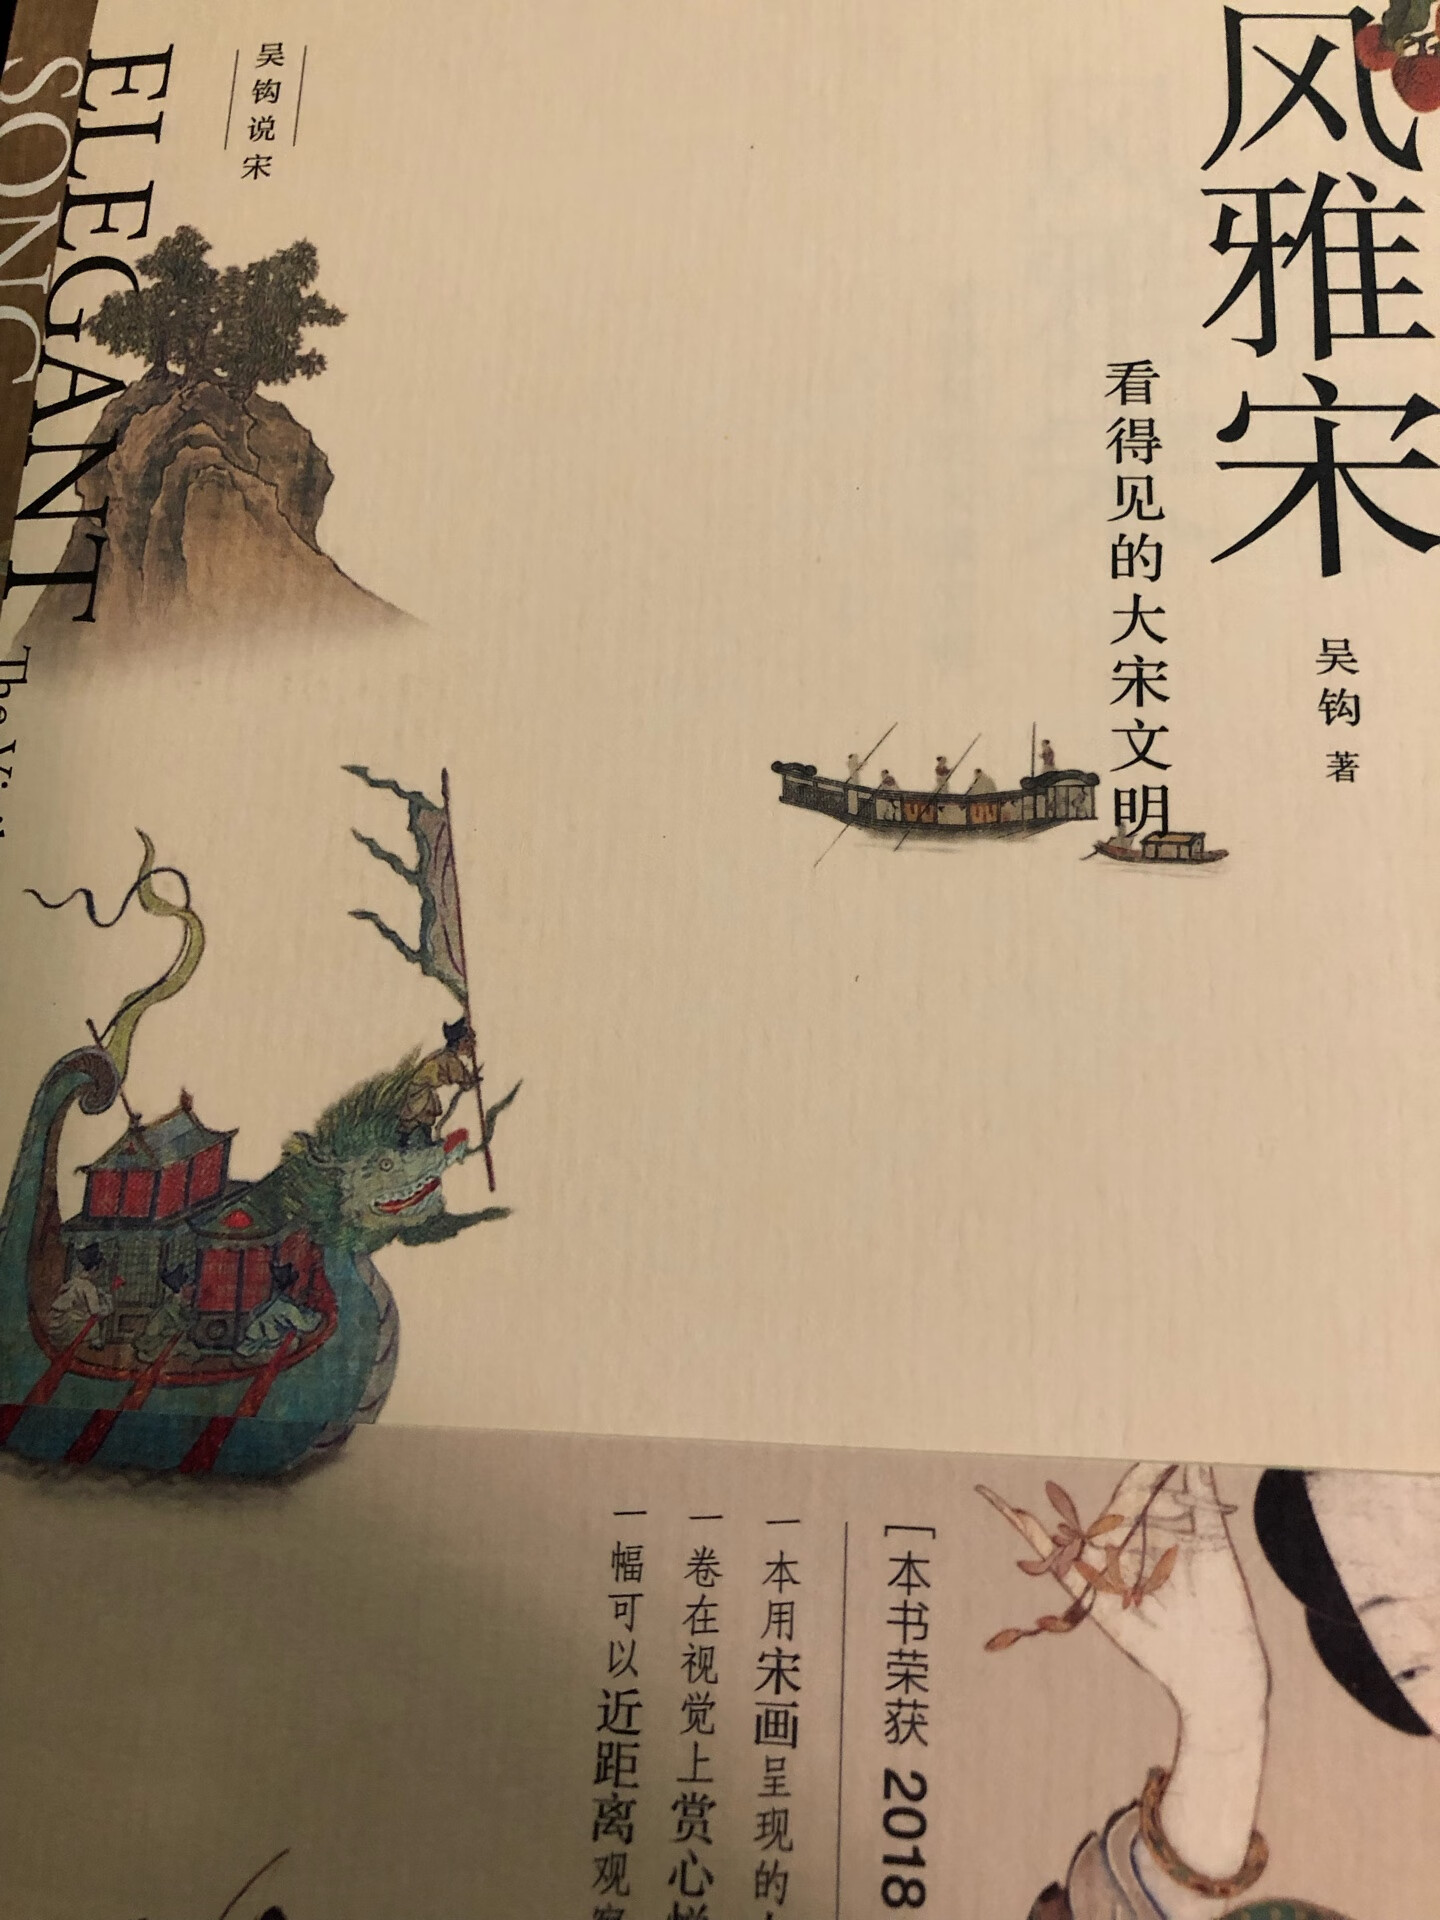 裸脊锁线 图文并茂 非常适合翻看的一册书 对了解宋朝文化很有用